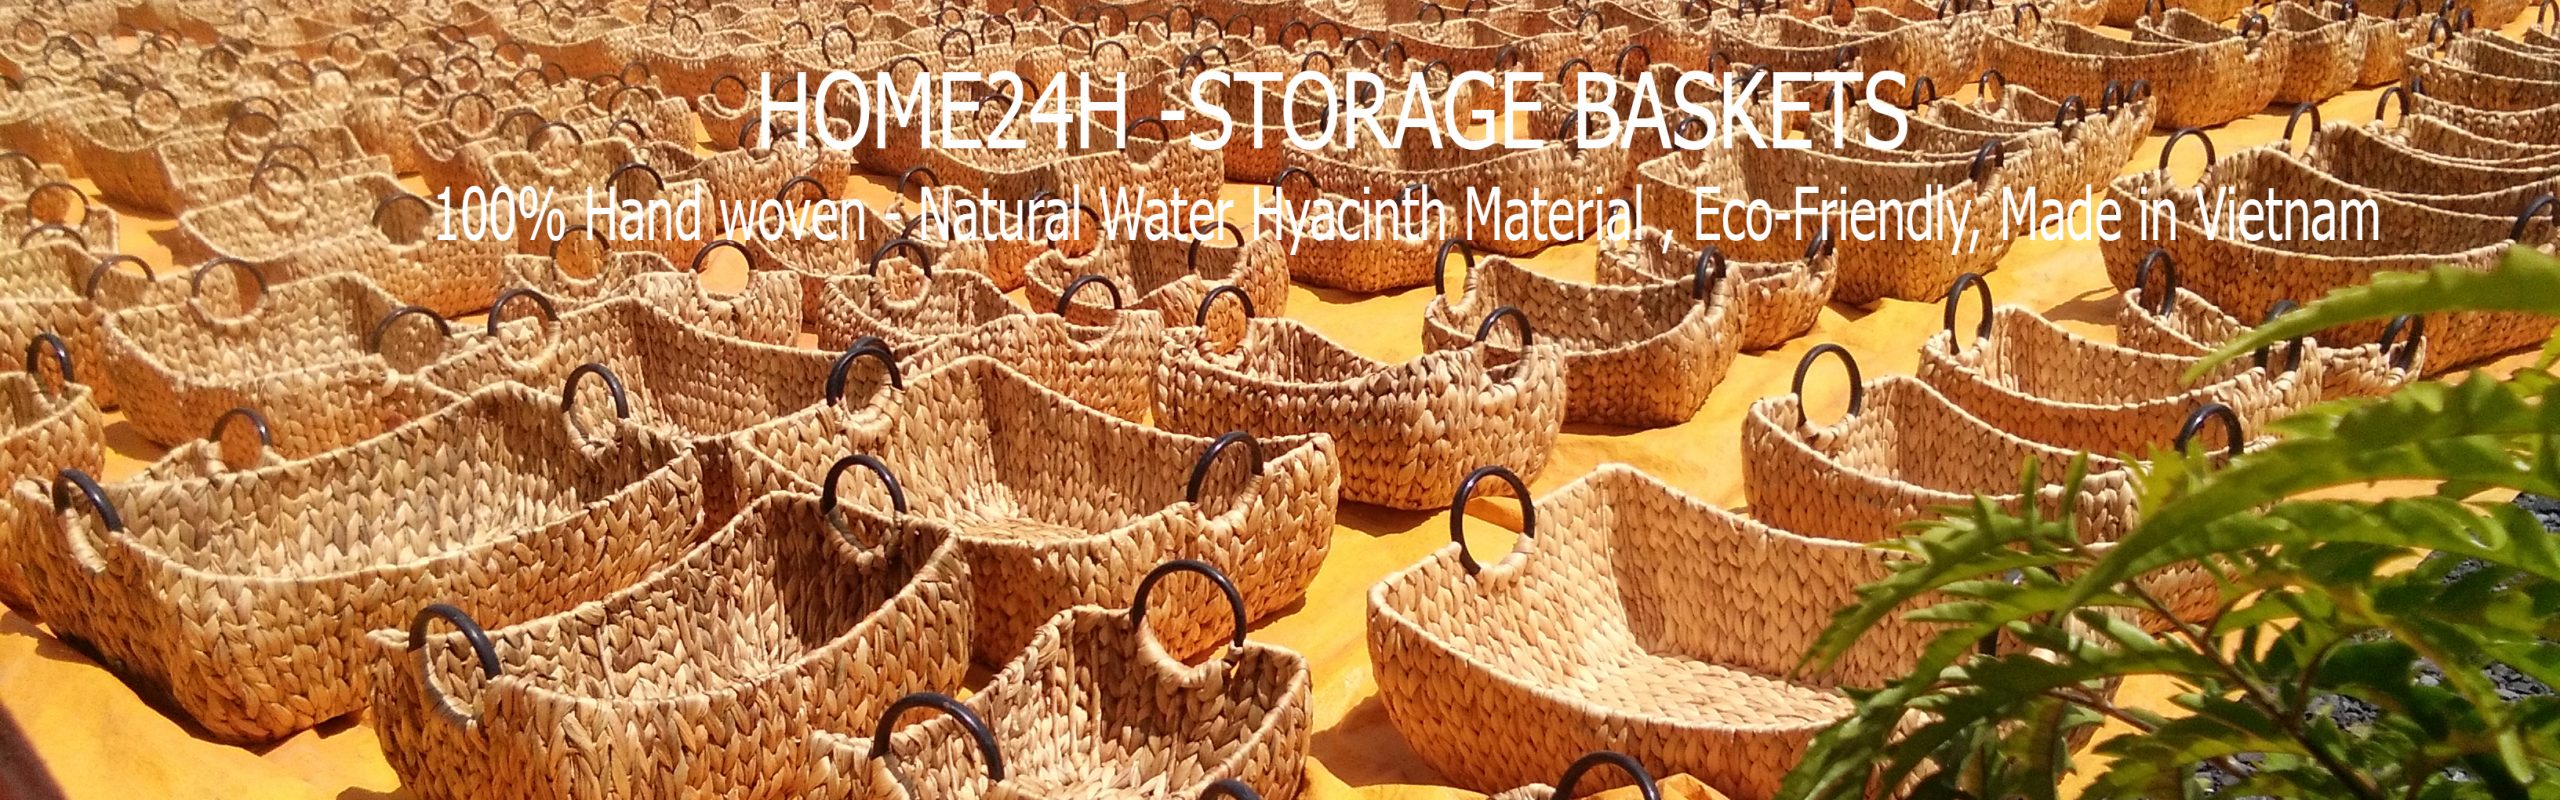 home24h storage basket